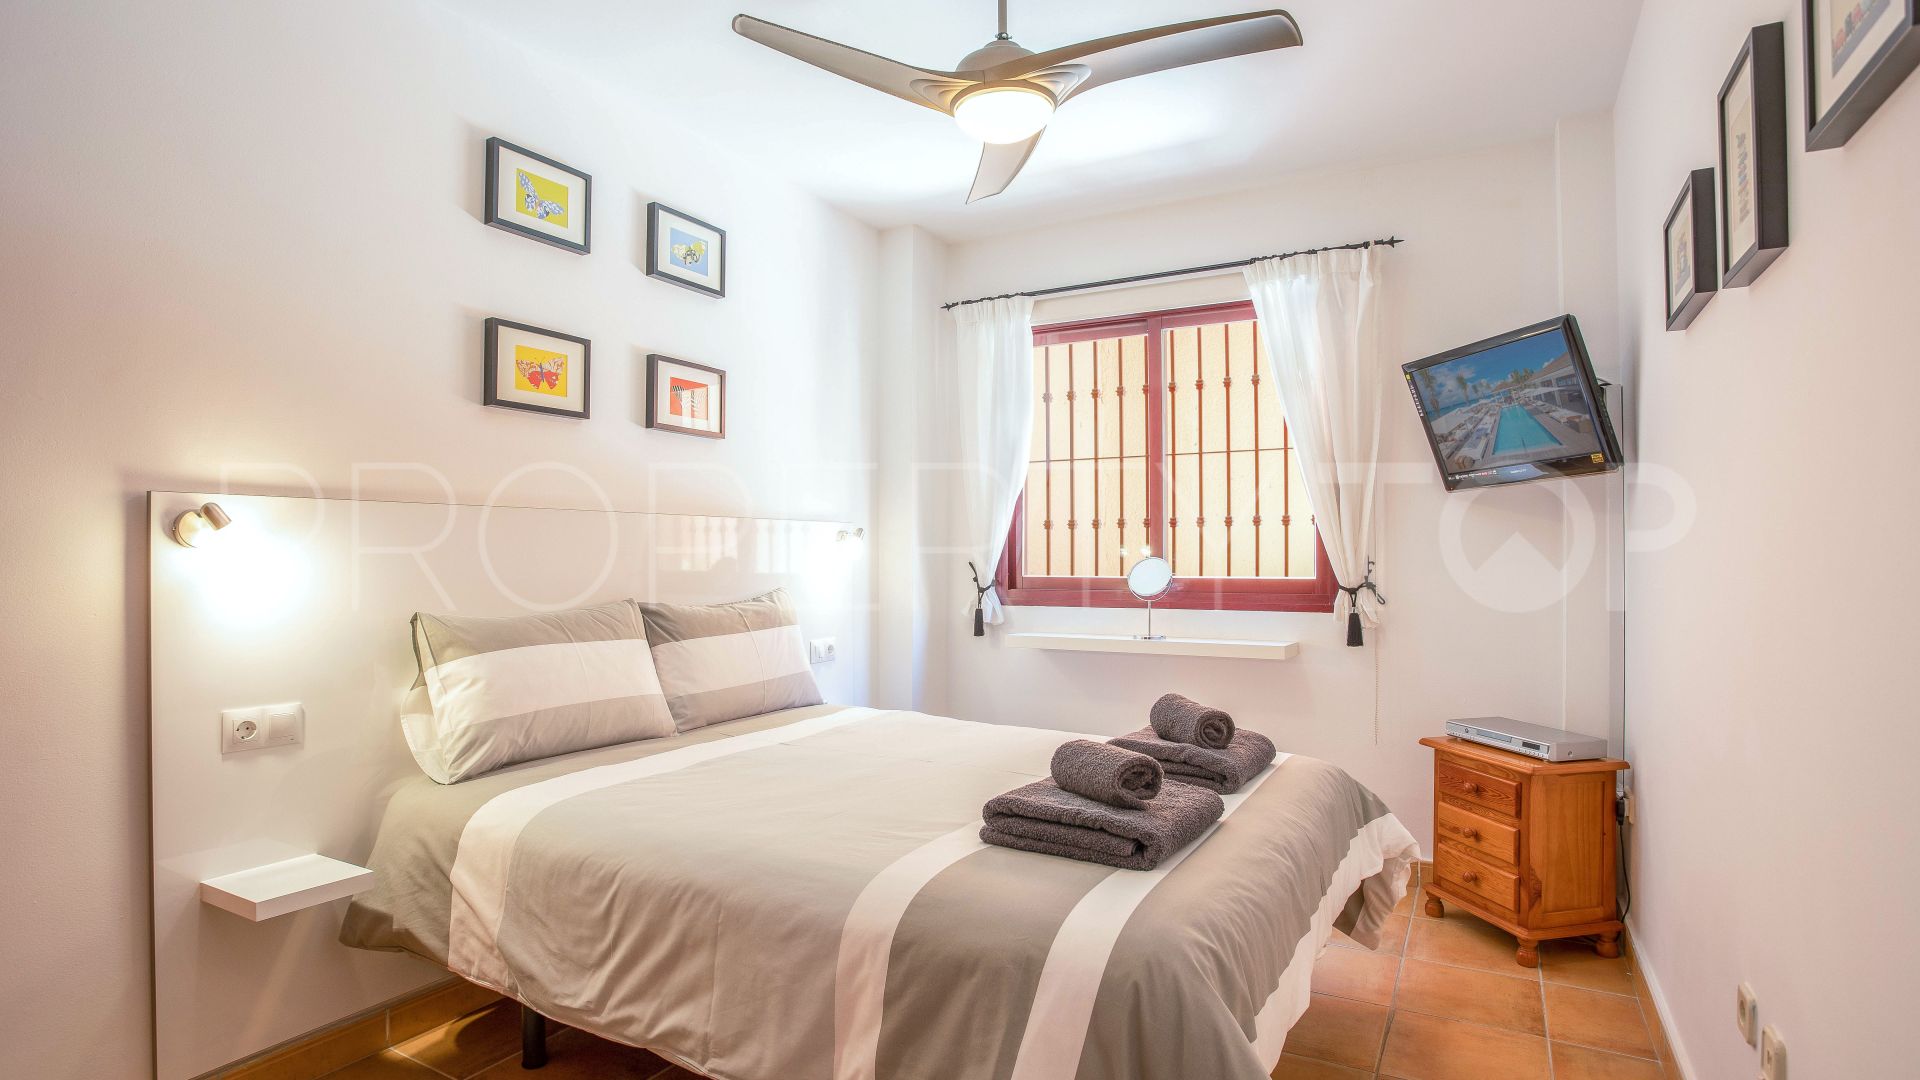 4 bedrooms Calahonda ground floor duplex for sale